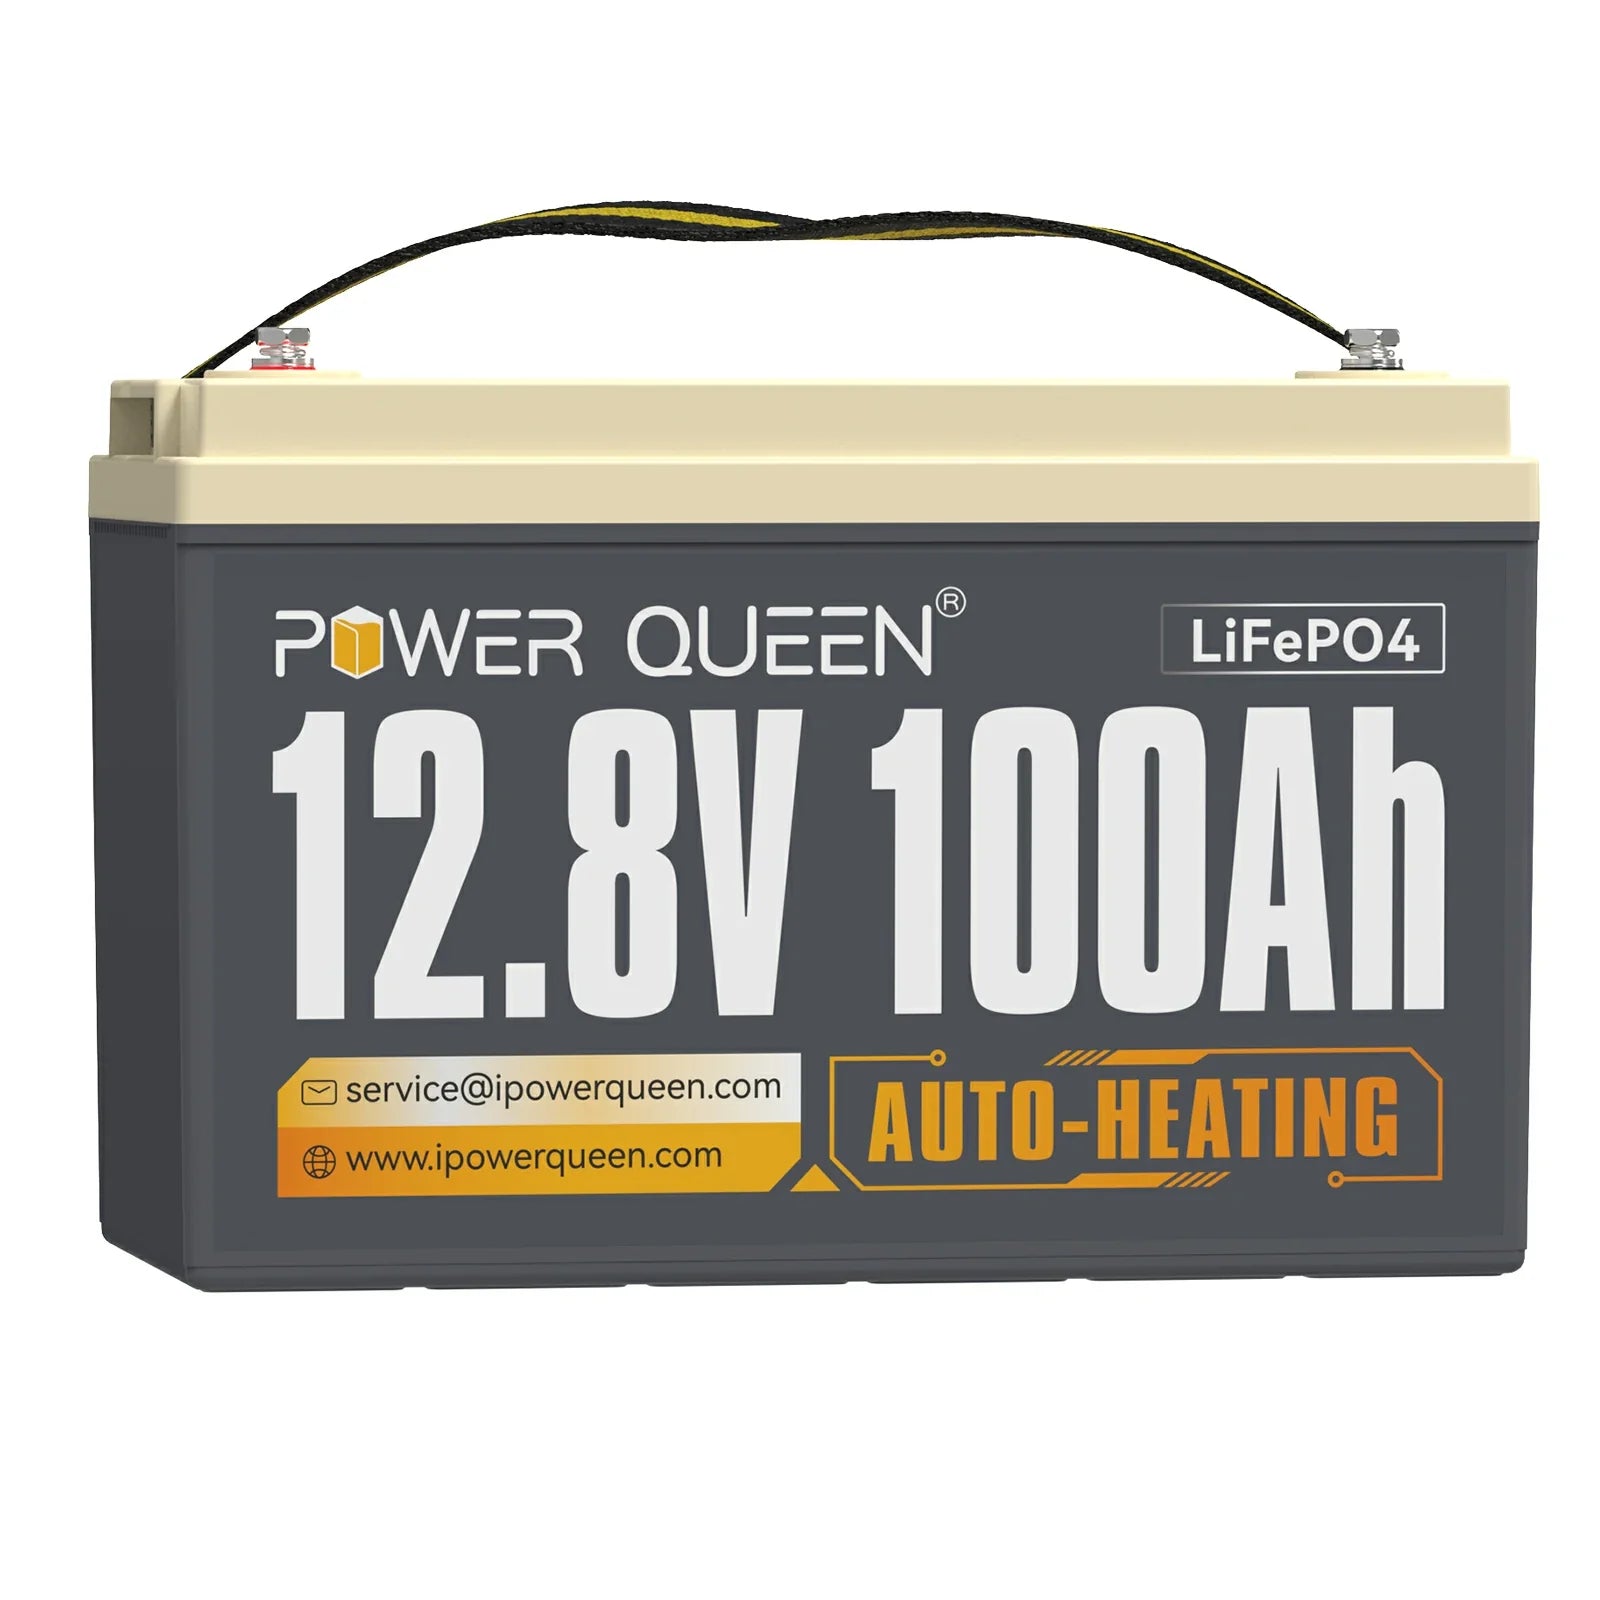 【0% BTW】Power Queen 12,8 V 100 Ah zelfverwarmende LiFePO4-batterij, ingebouwd 100 A BMS